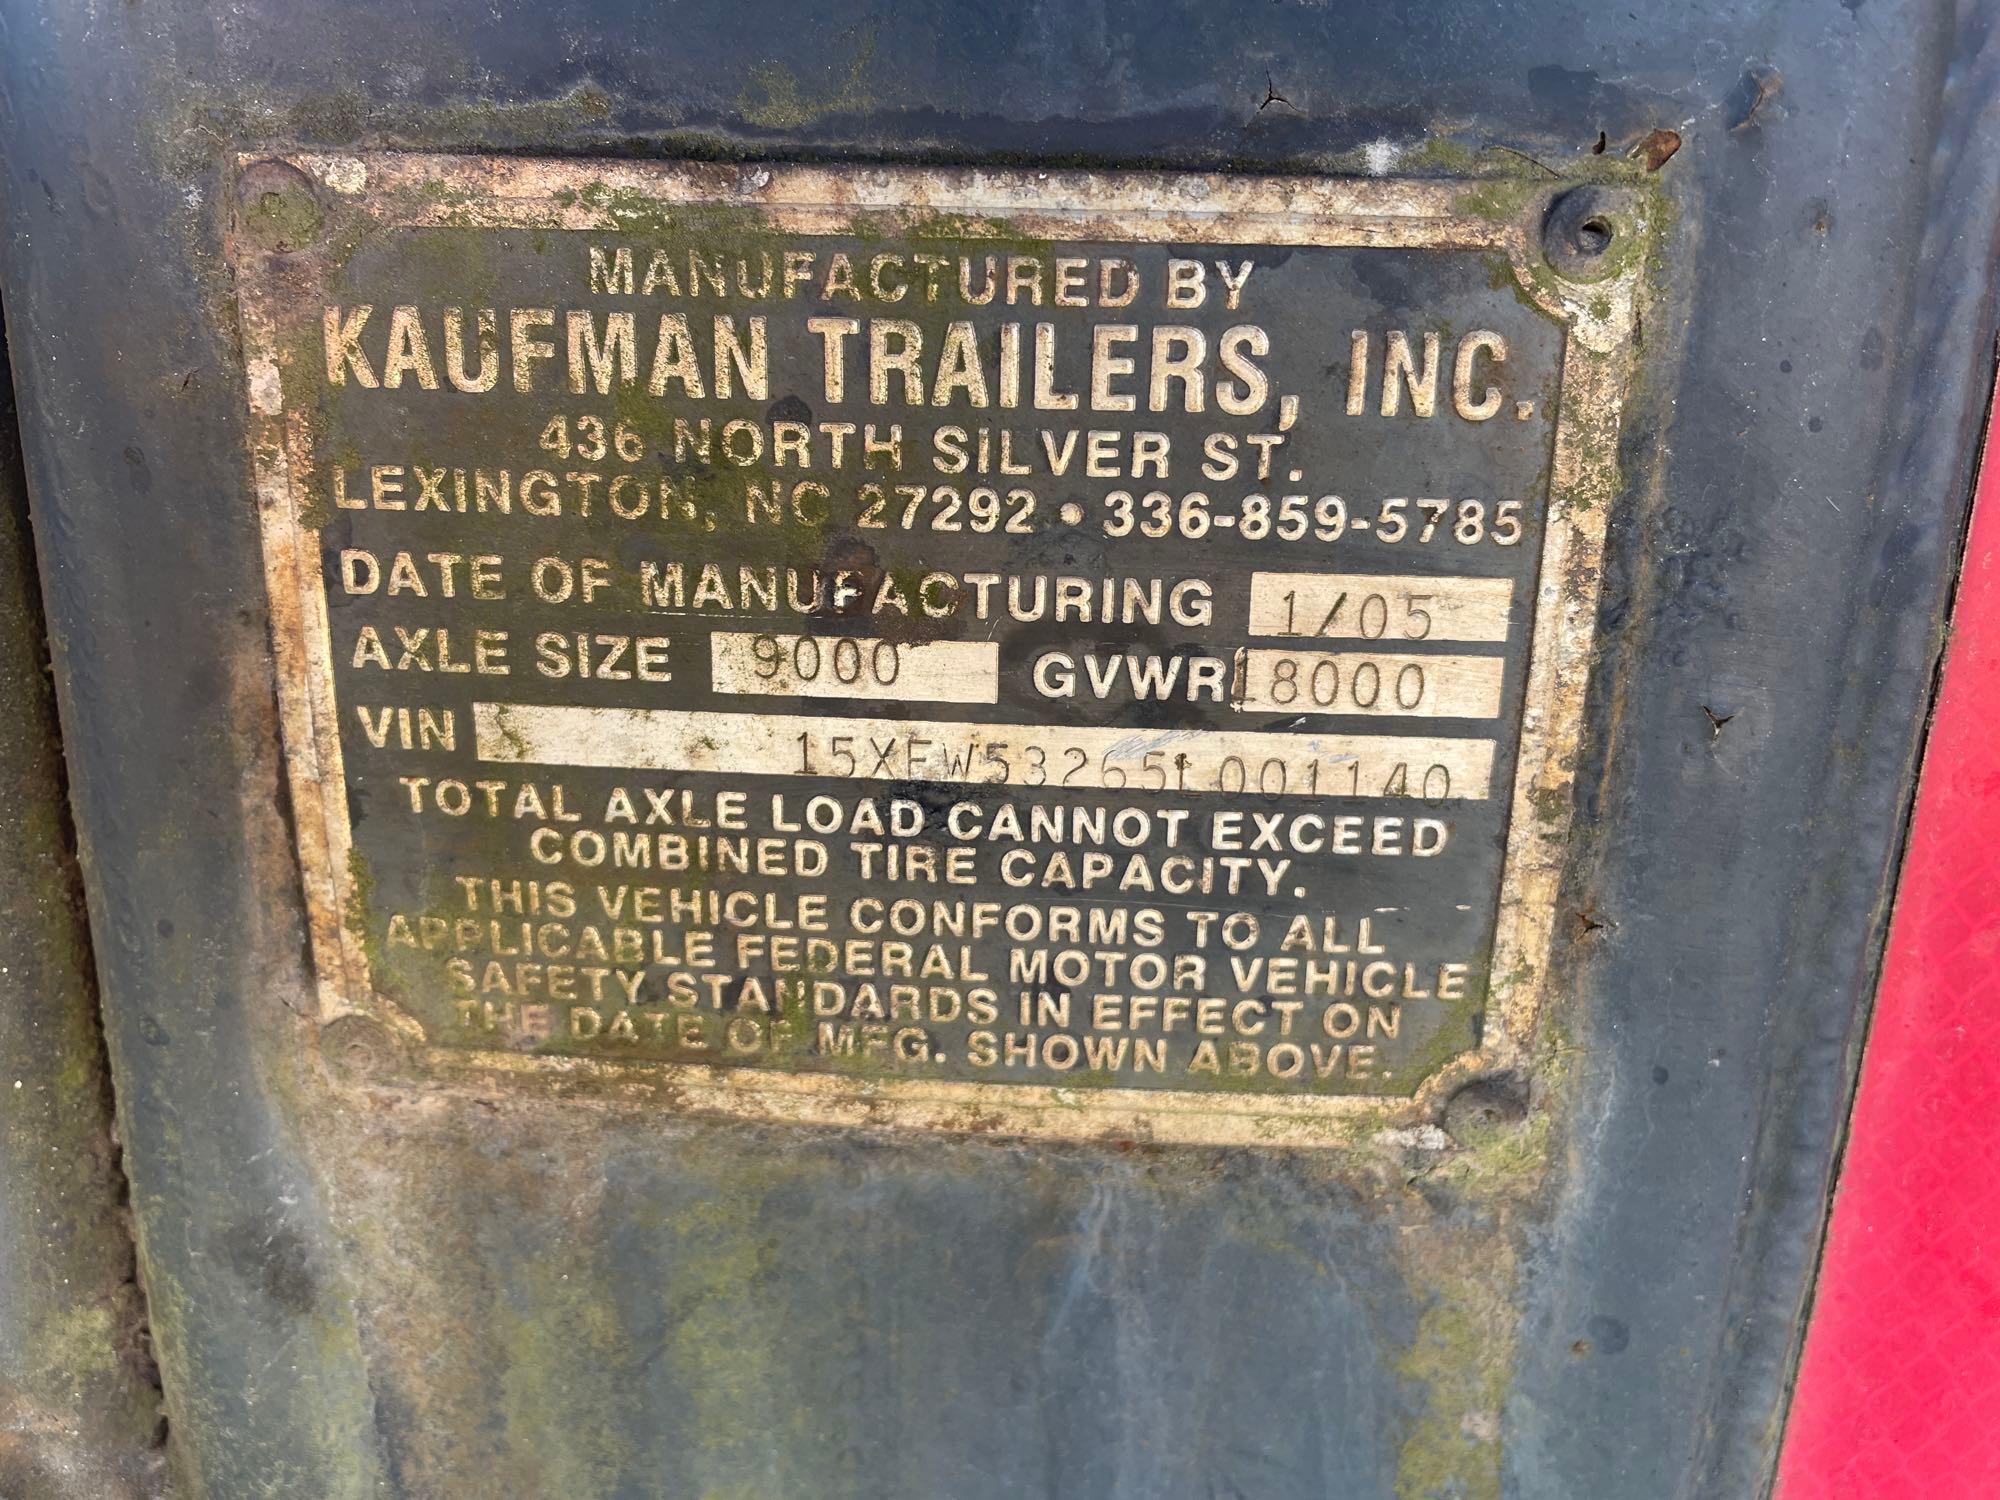 2005 Kaufman Trailers Car Hauler, VIN # 15XFW53265L001140